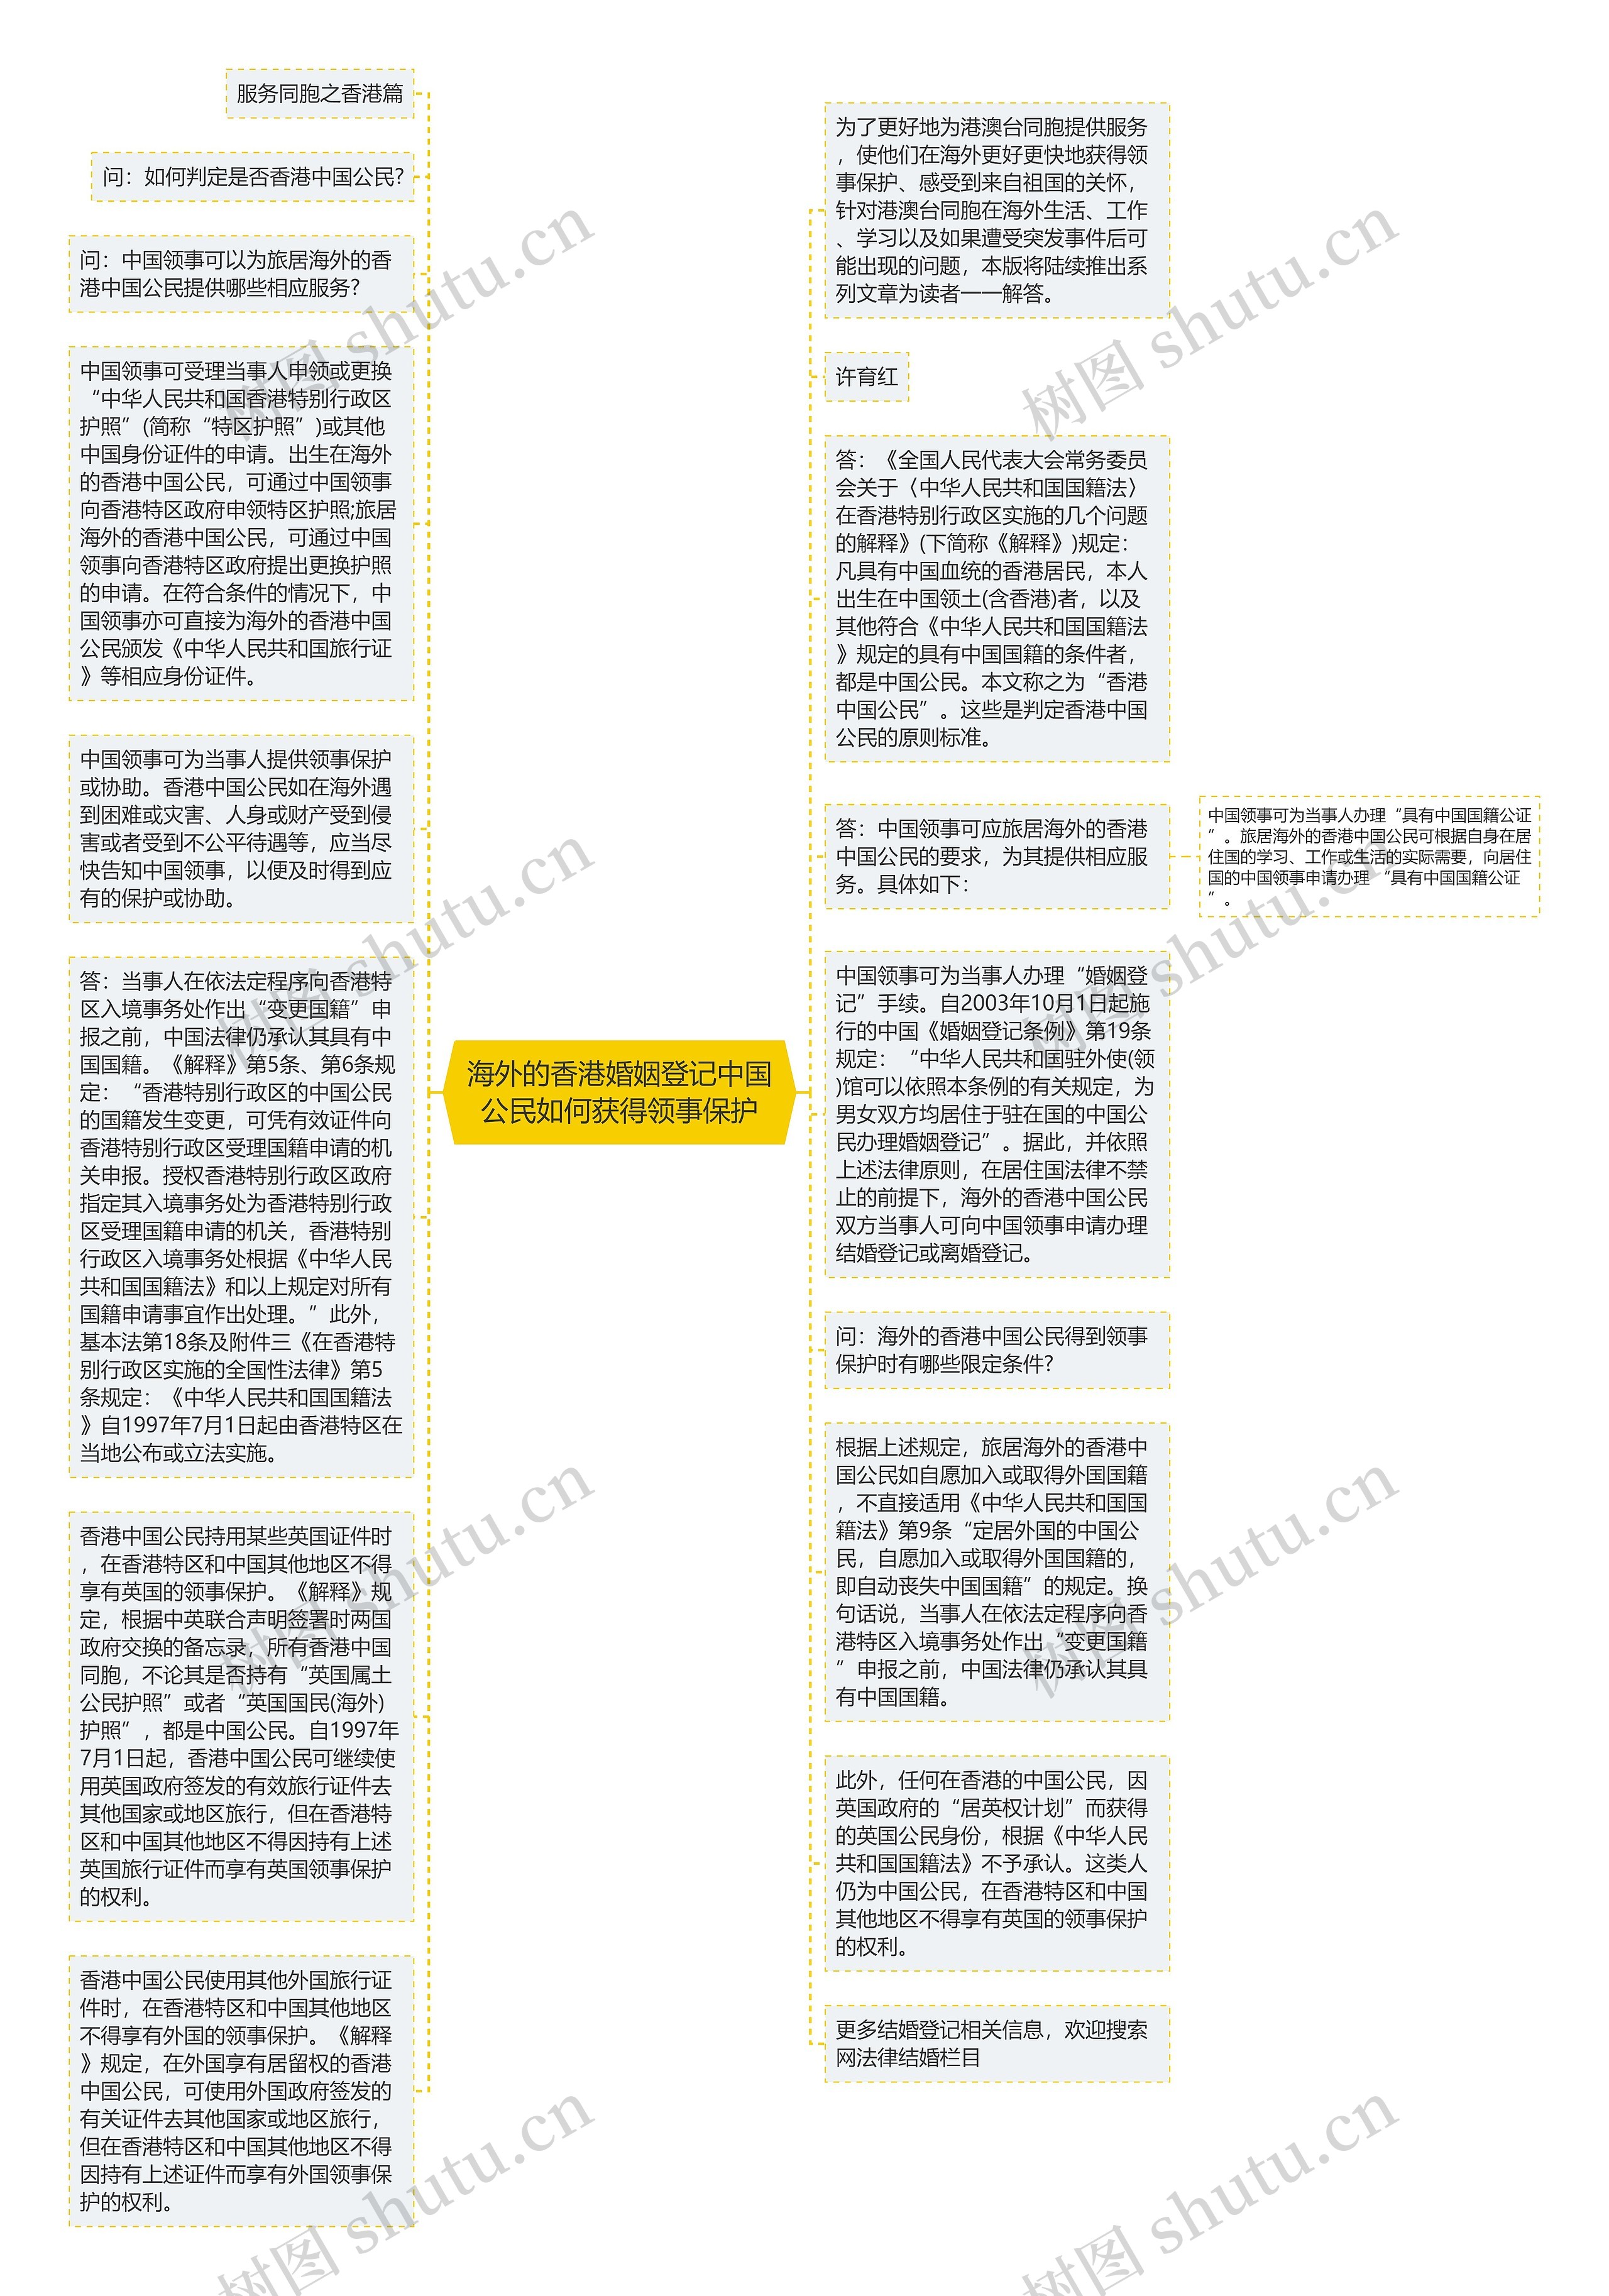 海外的香港婚姻登记中国公民如何获得领事保护